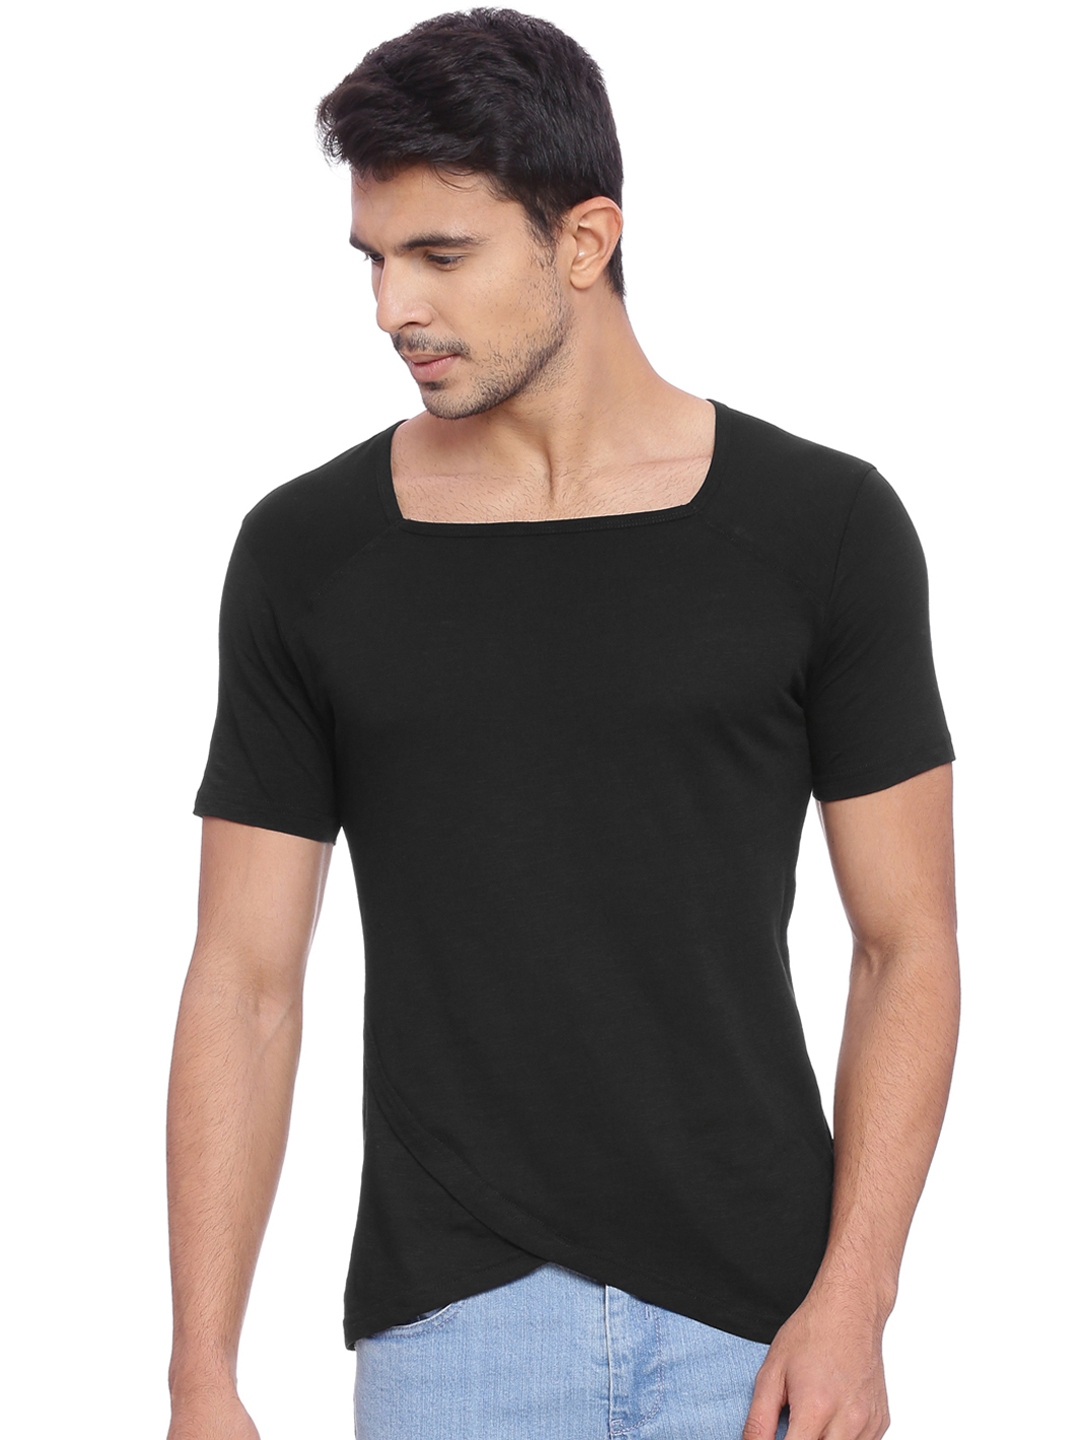 Buy KULTPRIT Men Black Solid Square Neck T Shirt - Tshirts for Men ...